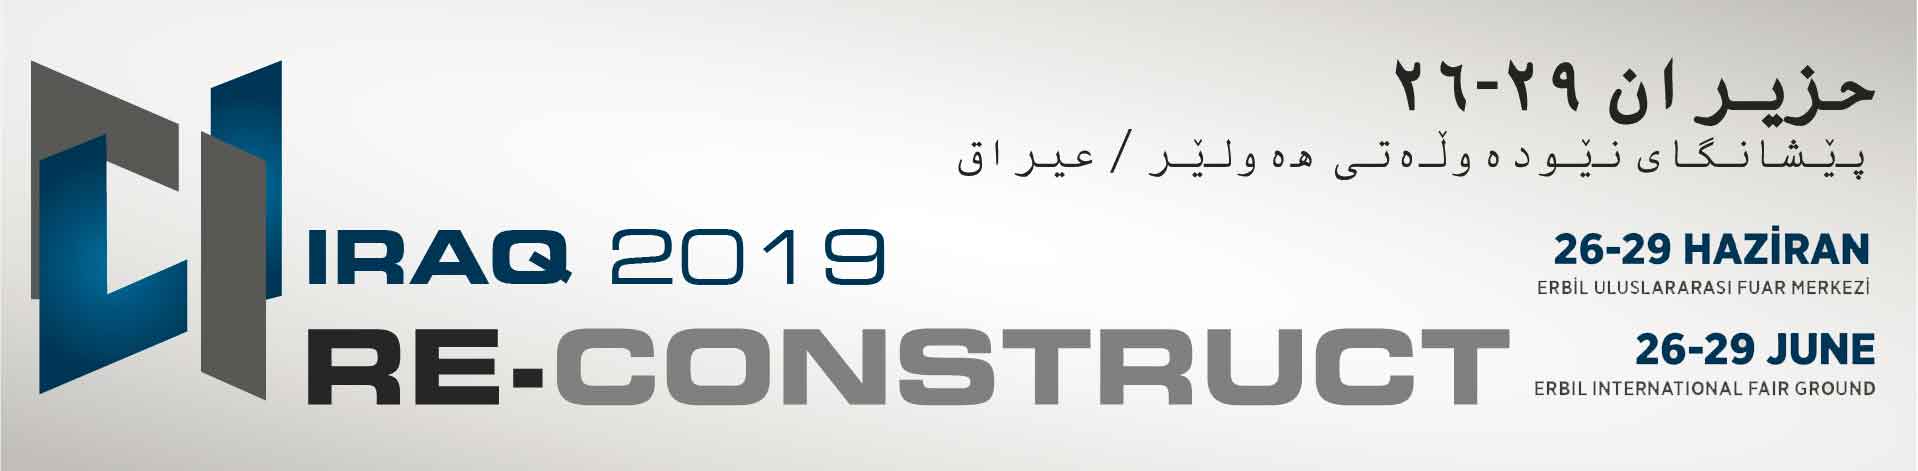 RE-CONSTRUCT IRAQ 2019